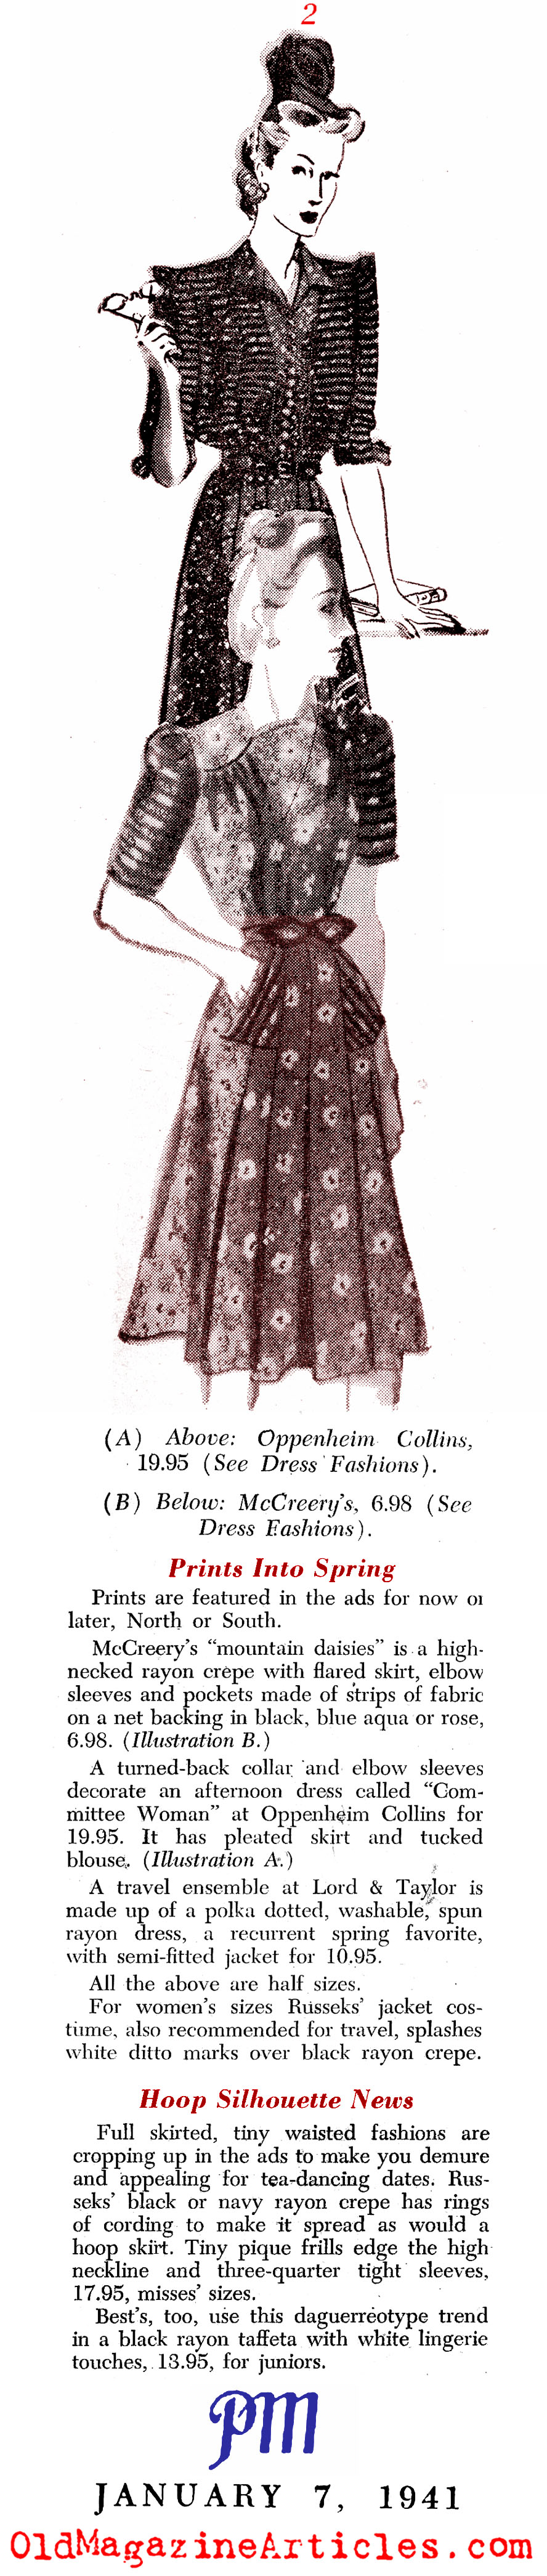 1941 Fashion (<i>PM</i> Tabloid, 1941)